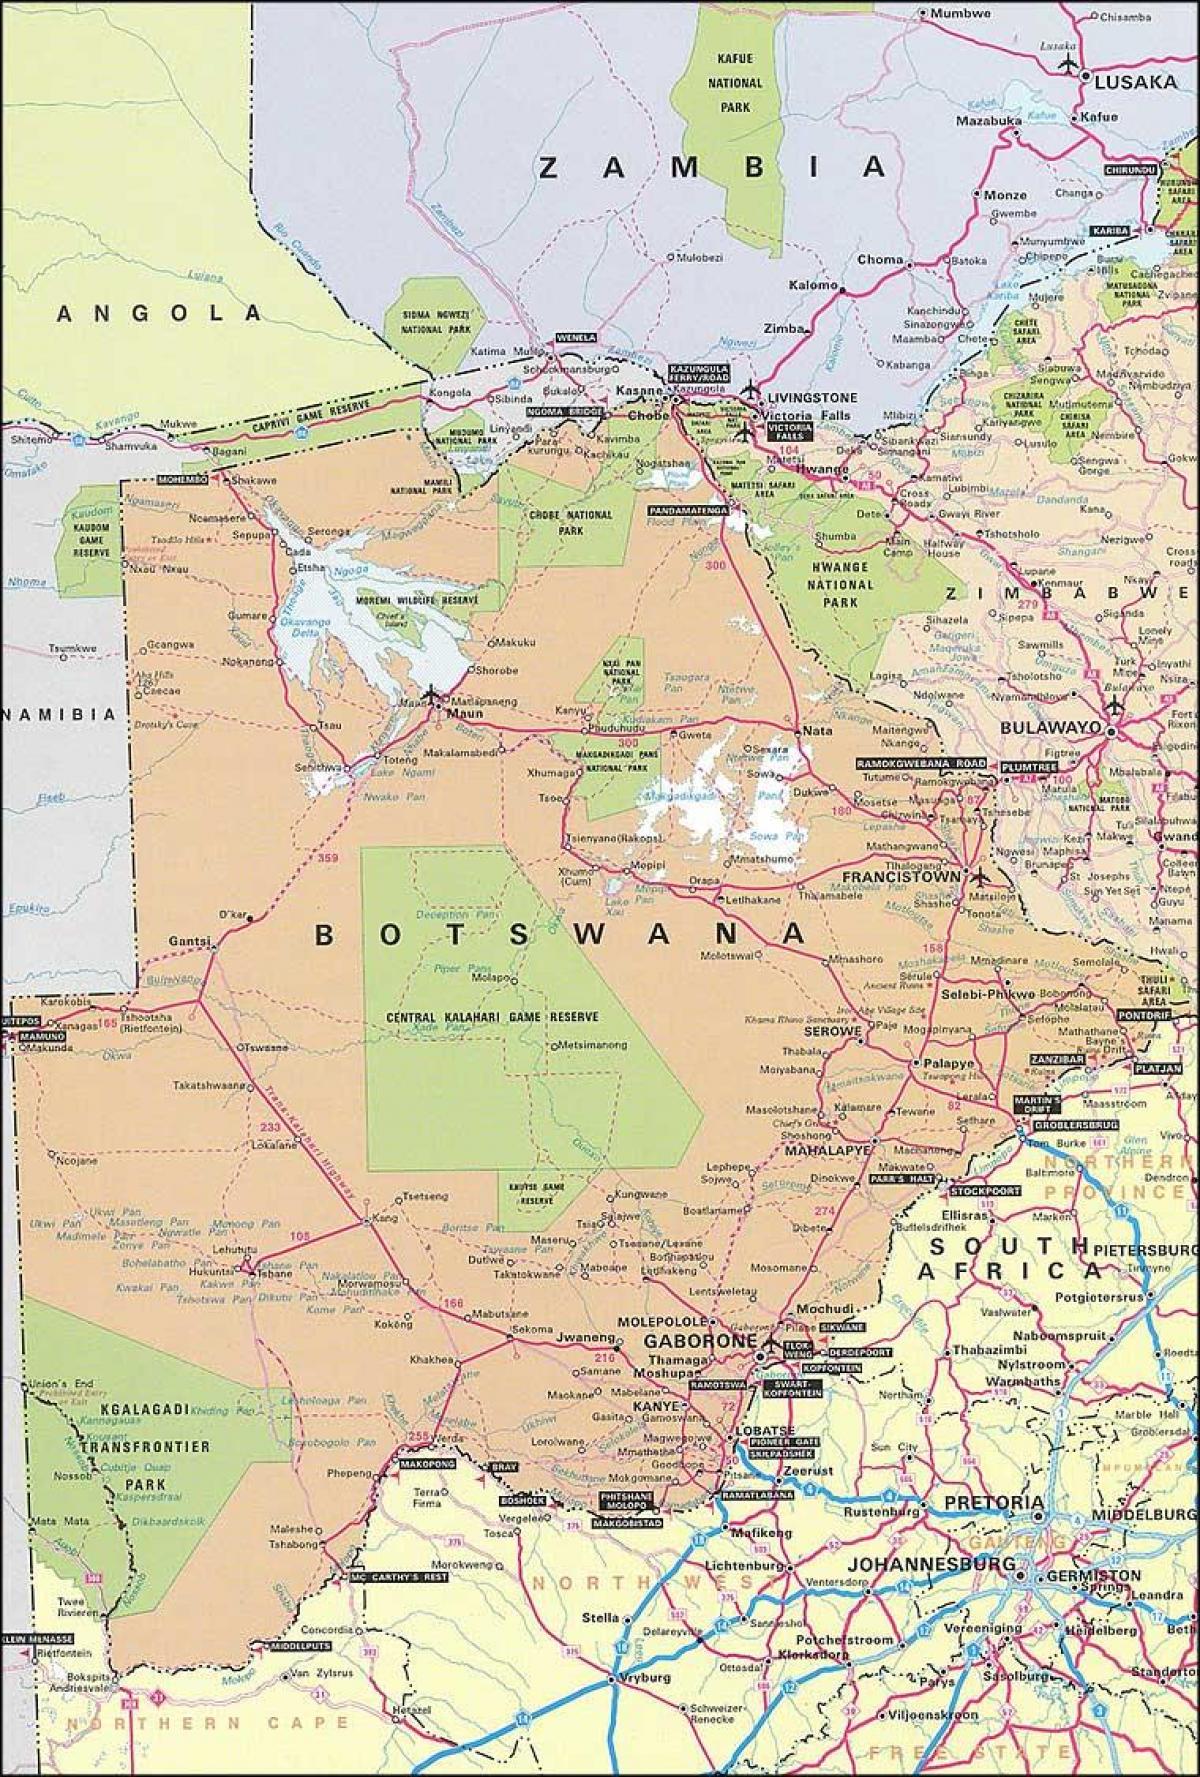 नक्शा बोत्सवाना के नक्शे के साथ दूरी